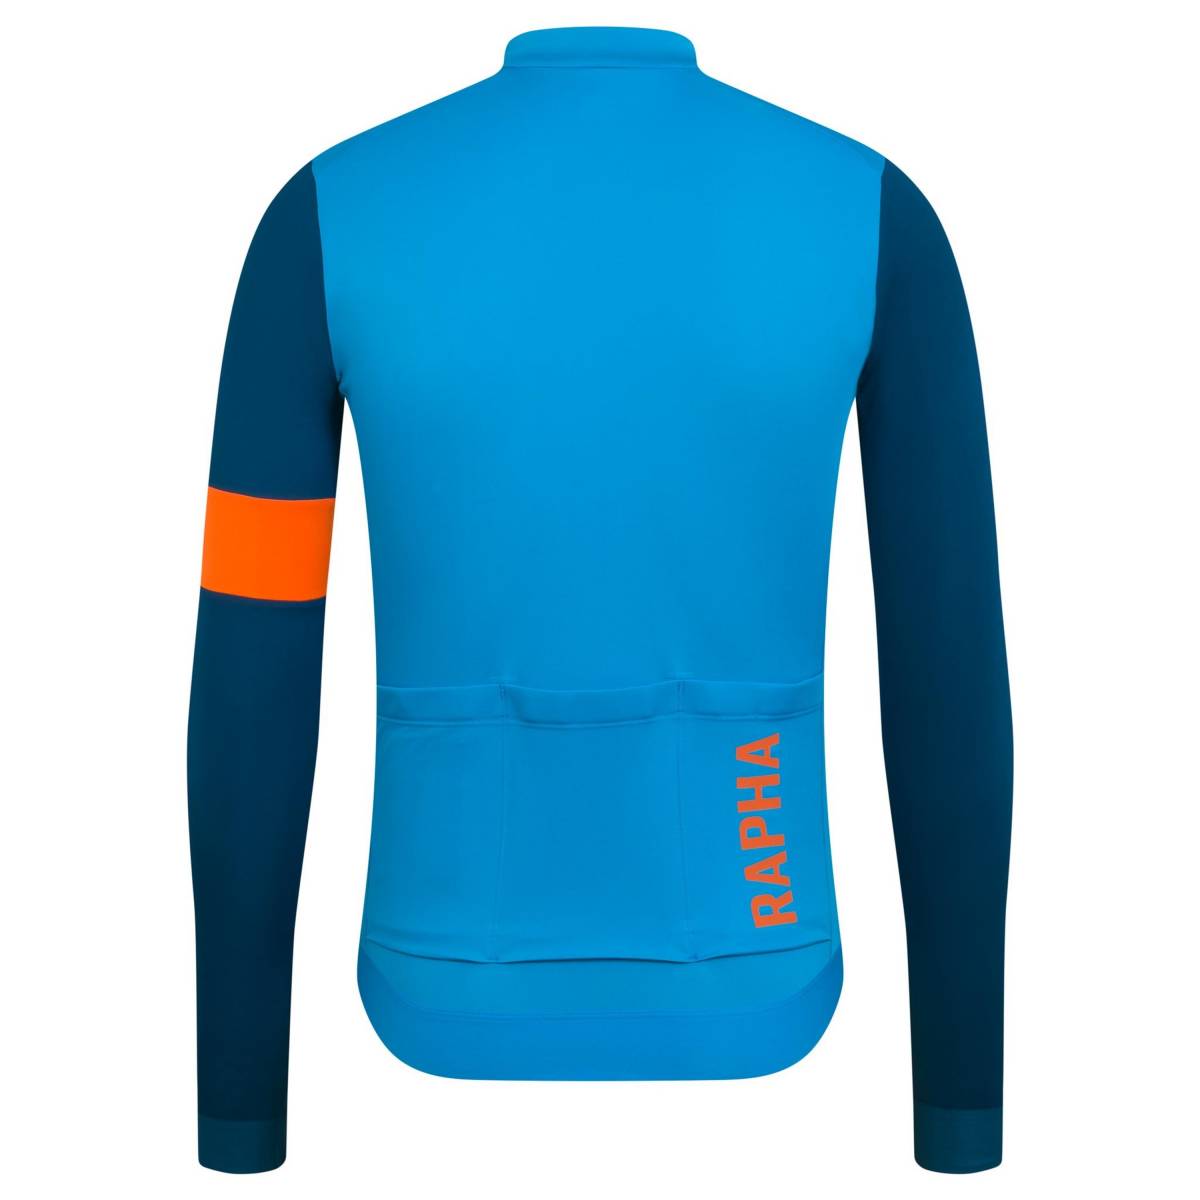 34％割引【日本製】 新品 Rapha Pro Team Long Sleeve Training Jersey Mサイズ ブルー/ティール ラファ  プロチーム ロングスリーブ トレーニング ジャージ ウエア、装備（男性用） 自転車、サイクリング スポーツ、レジャー-DIANAWIESNER.COM